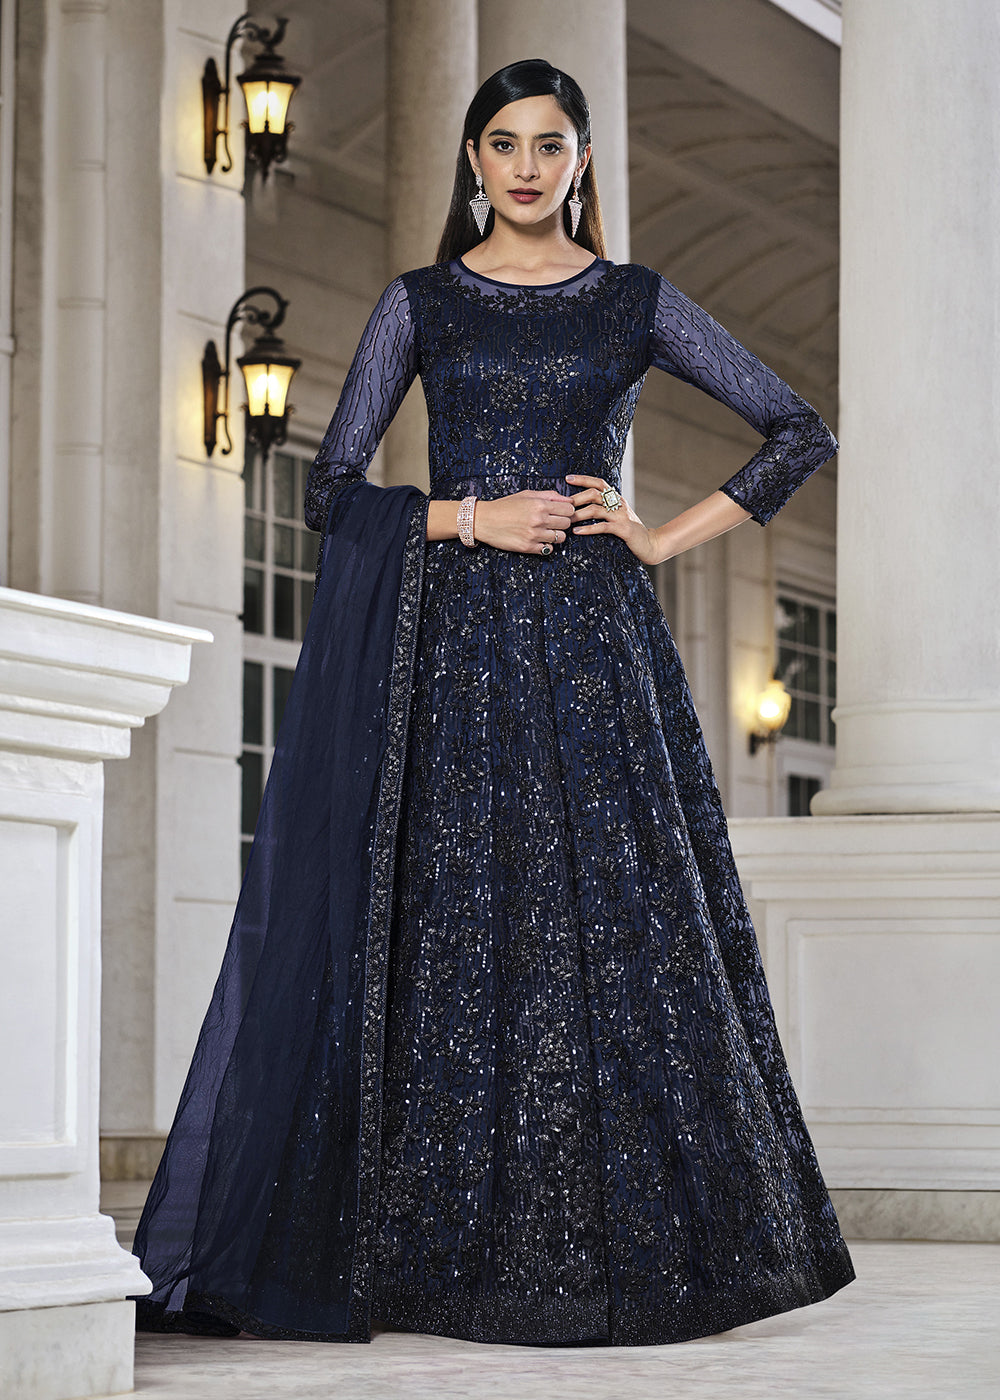 Buy Now Blue Lehenga/Pant Style Designer Anarkali Suit Online in USA, UK, Australia, New Zealand, Canada & Worldwide at Empress Clothing.